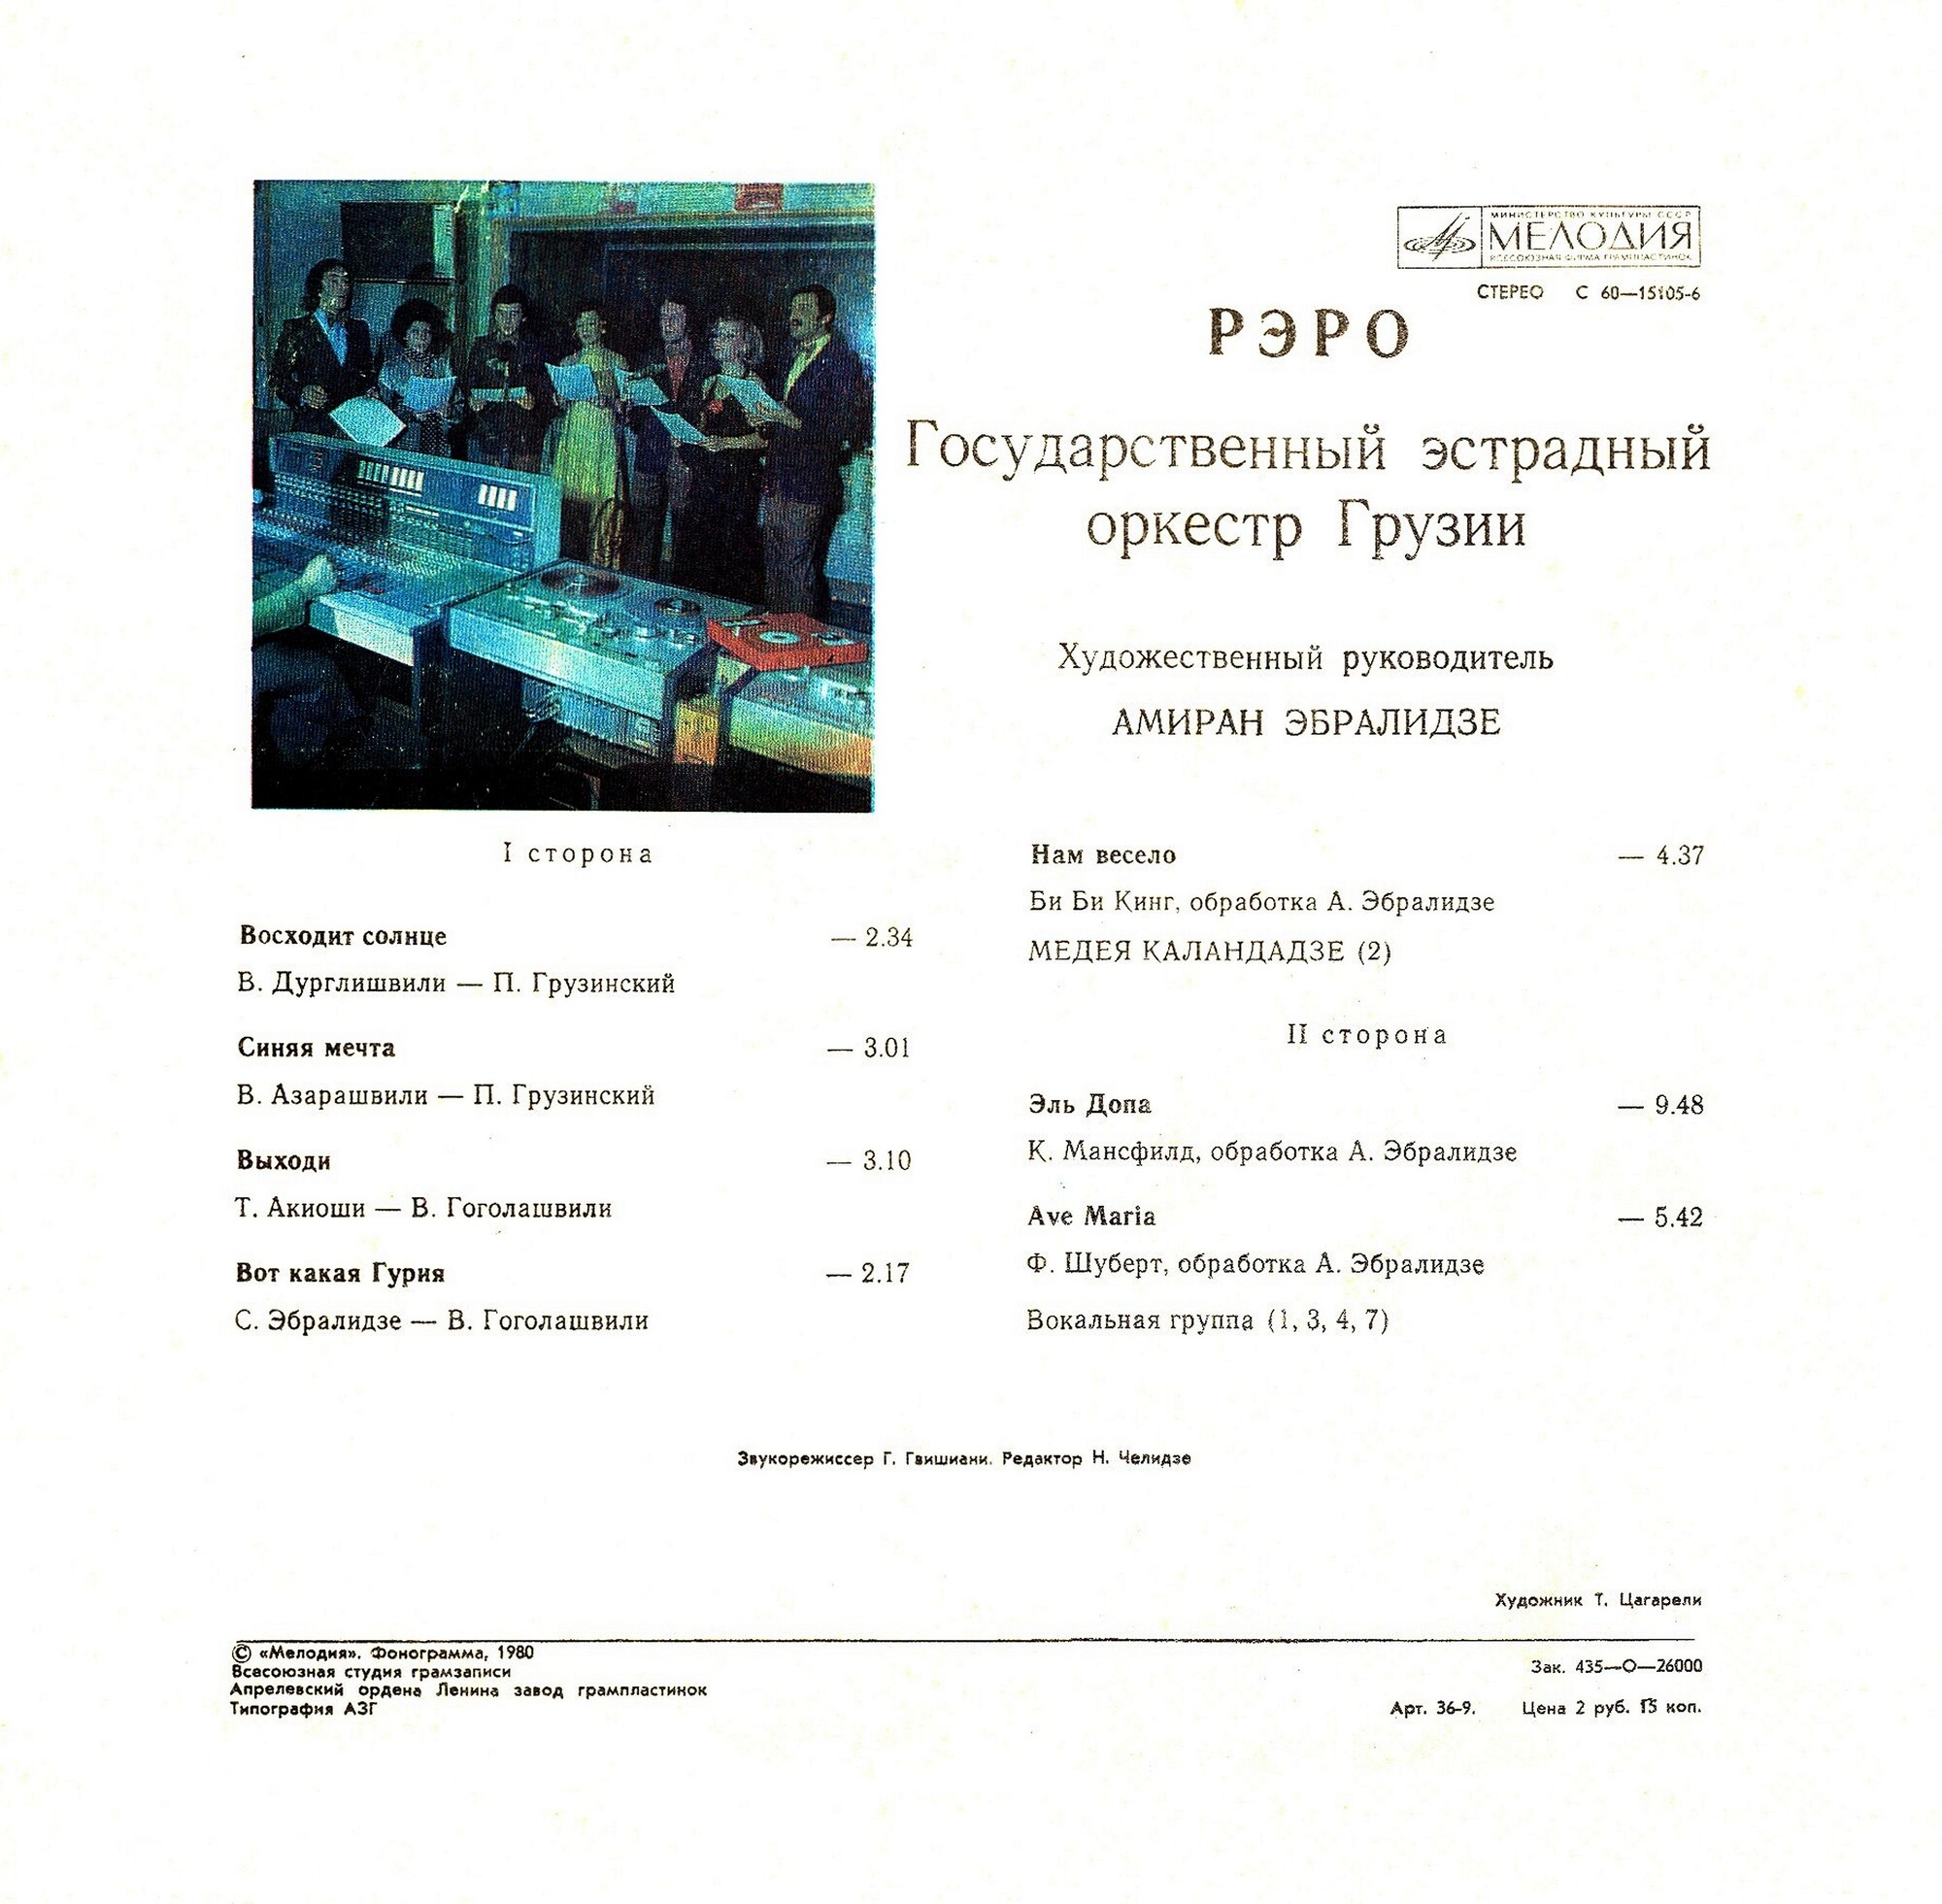 Государственный эстрадный оркестр Грузии  «РЭРО», худ. рук. Амиран Эбралидзе.